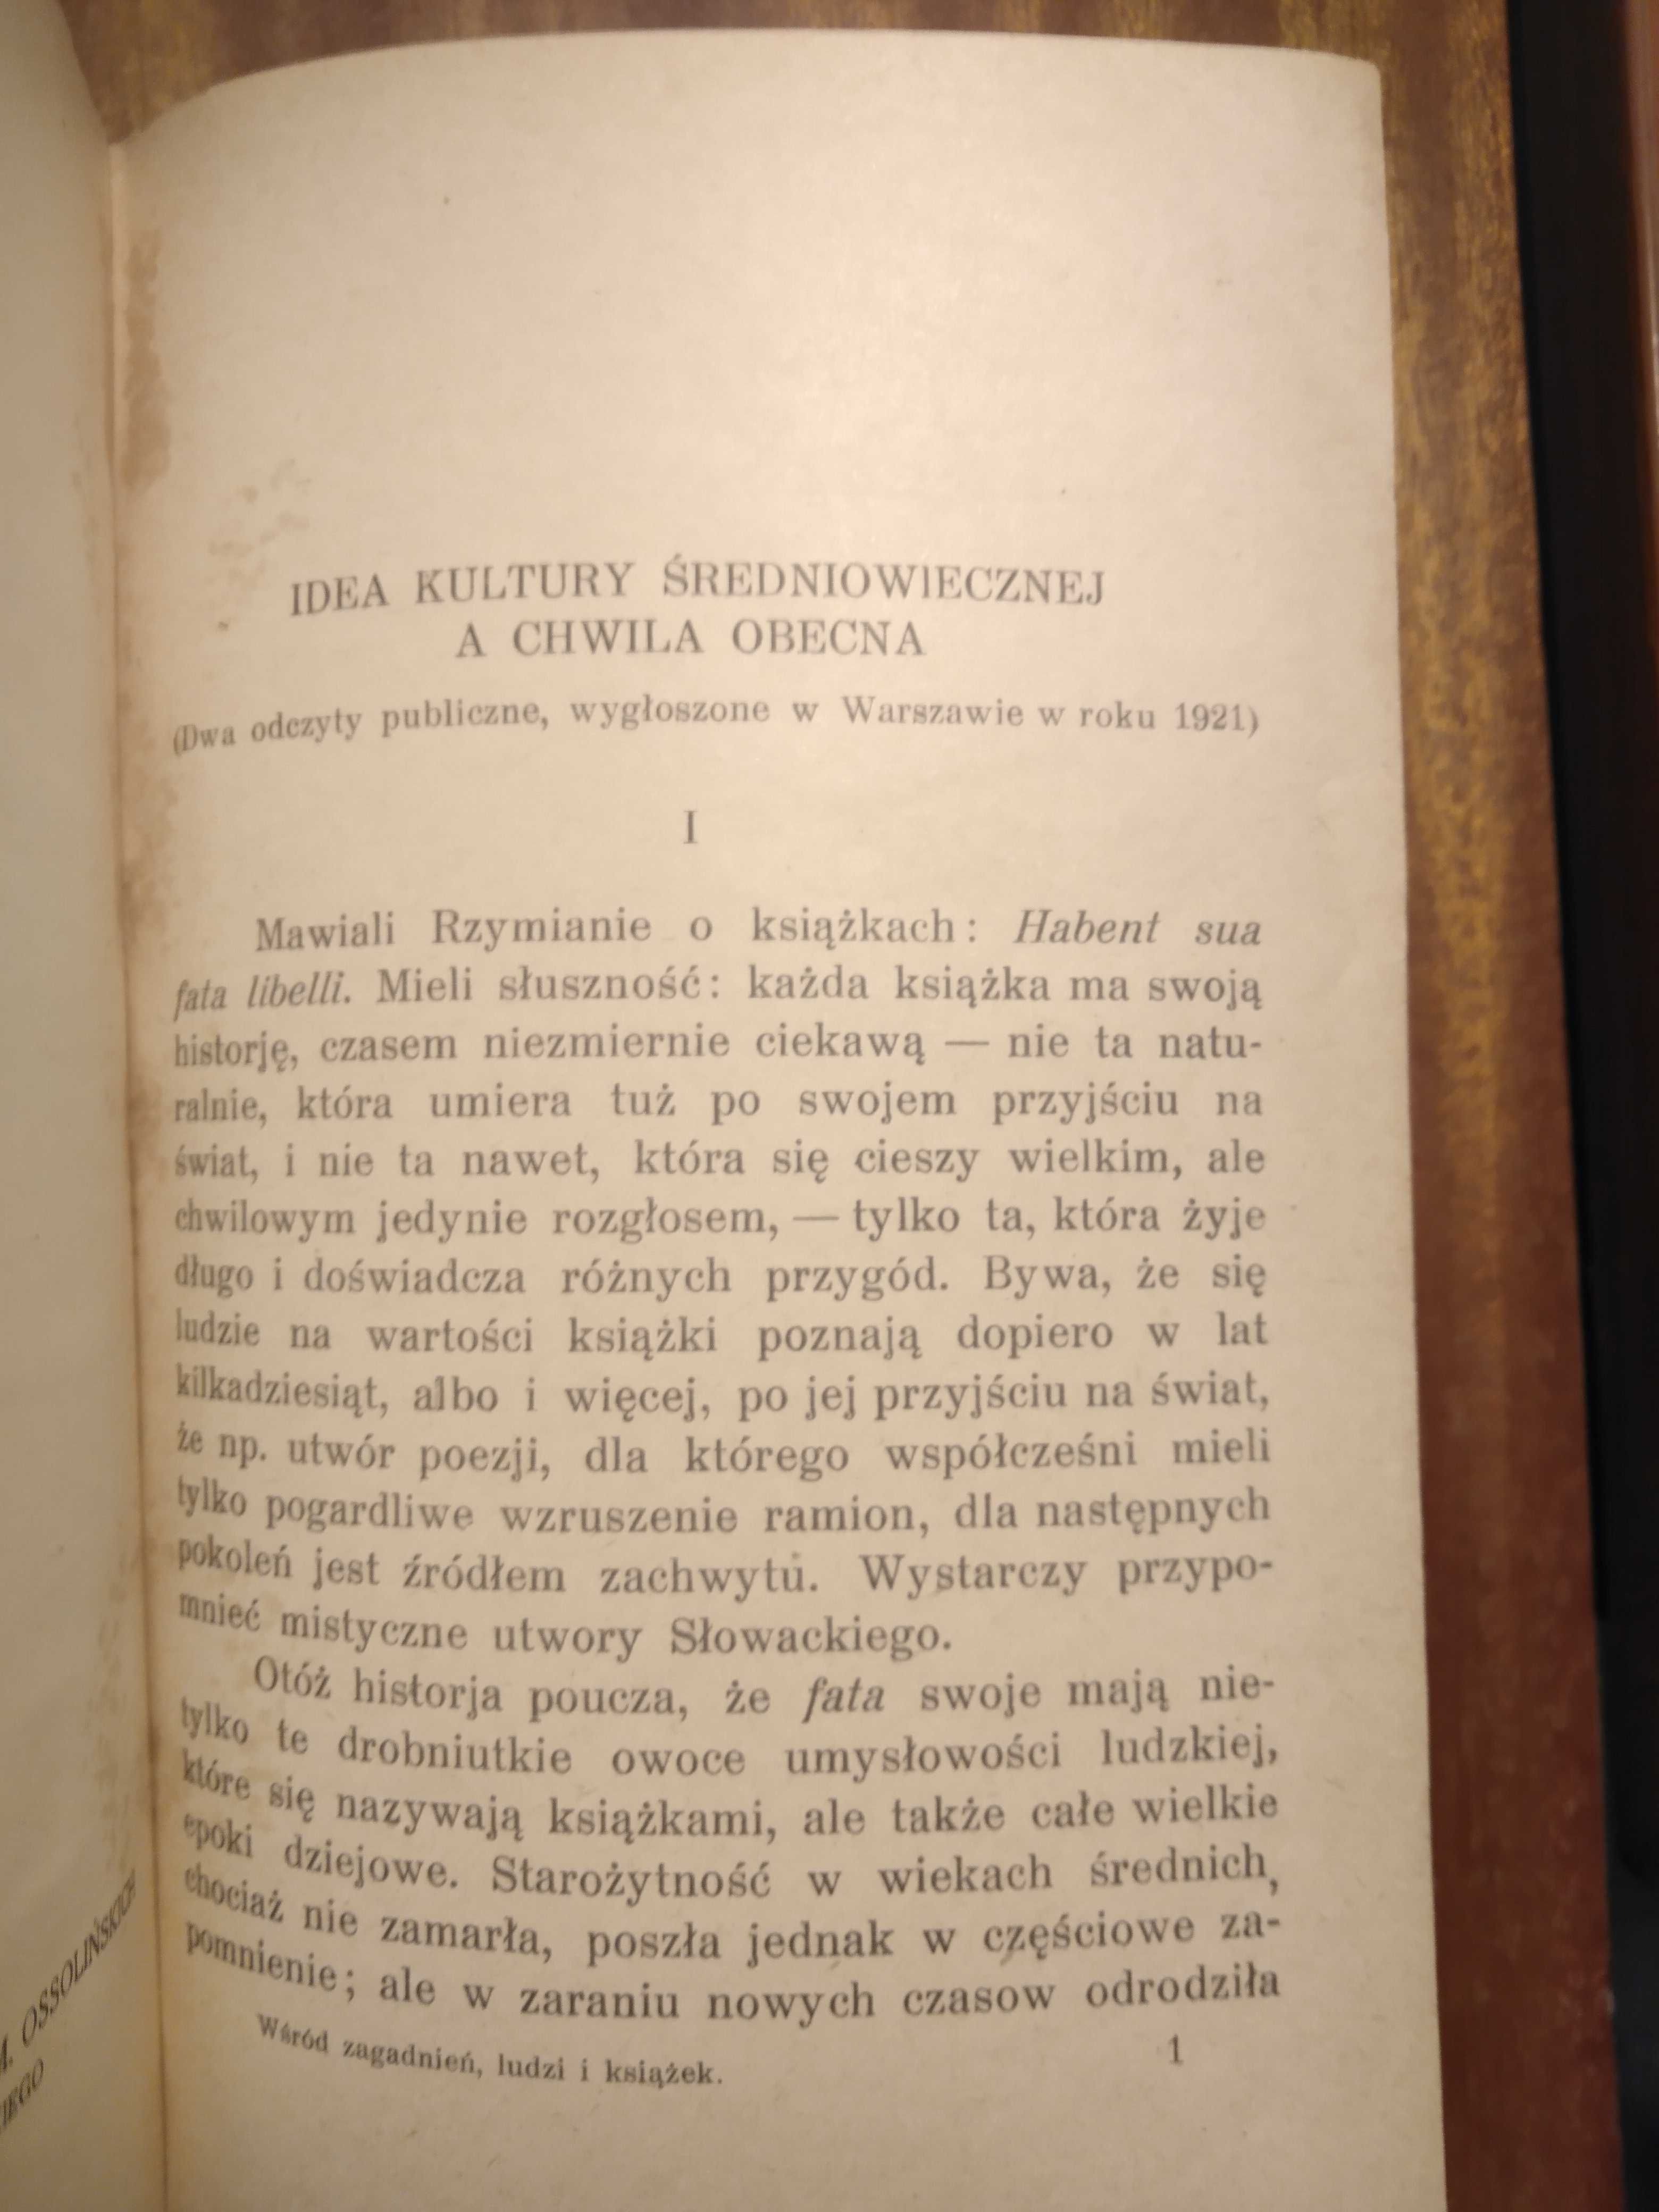 Wśród zagadnień, książek i ludzi - 1922